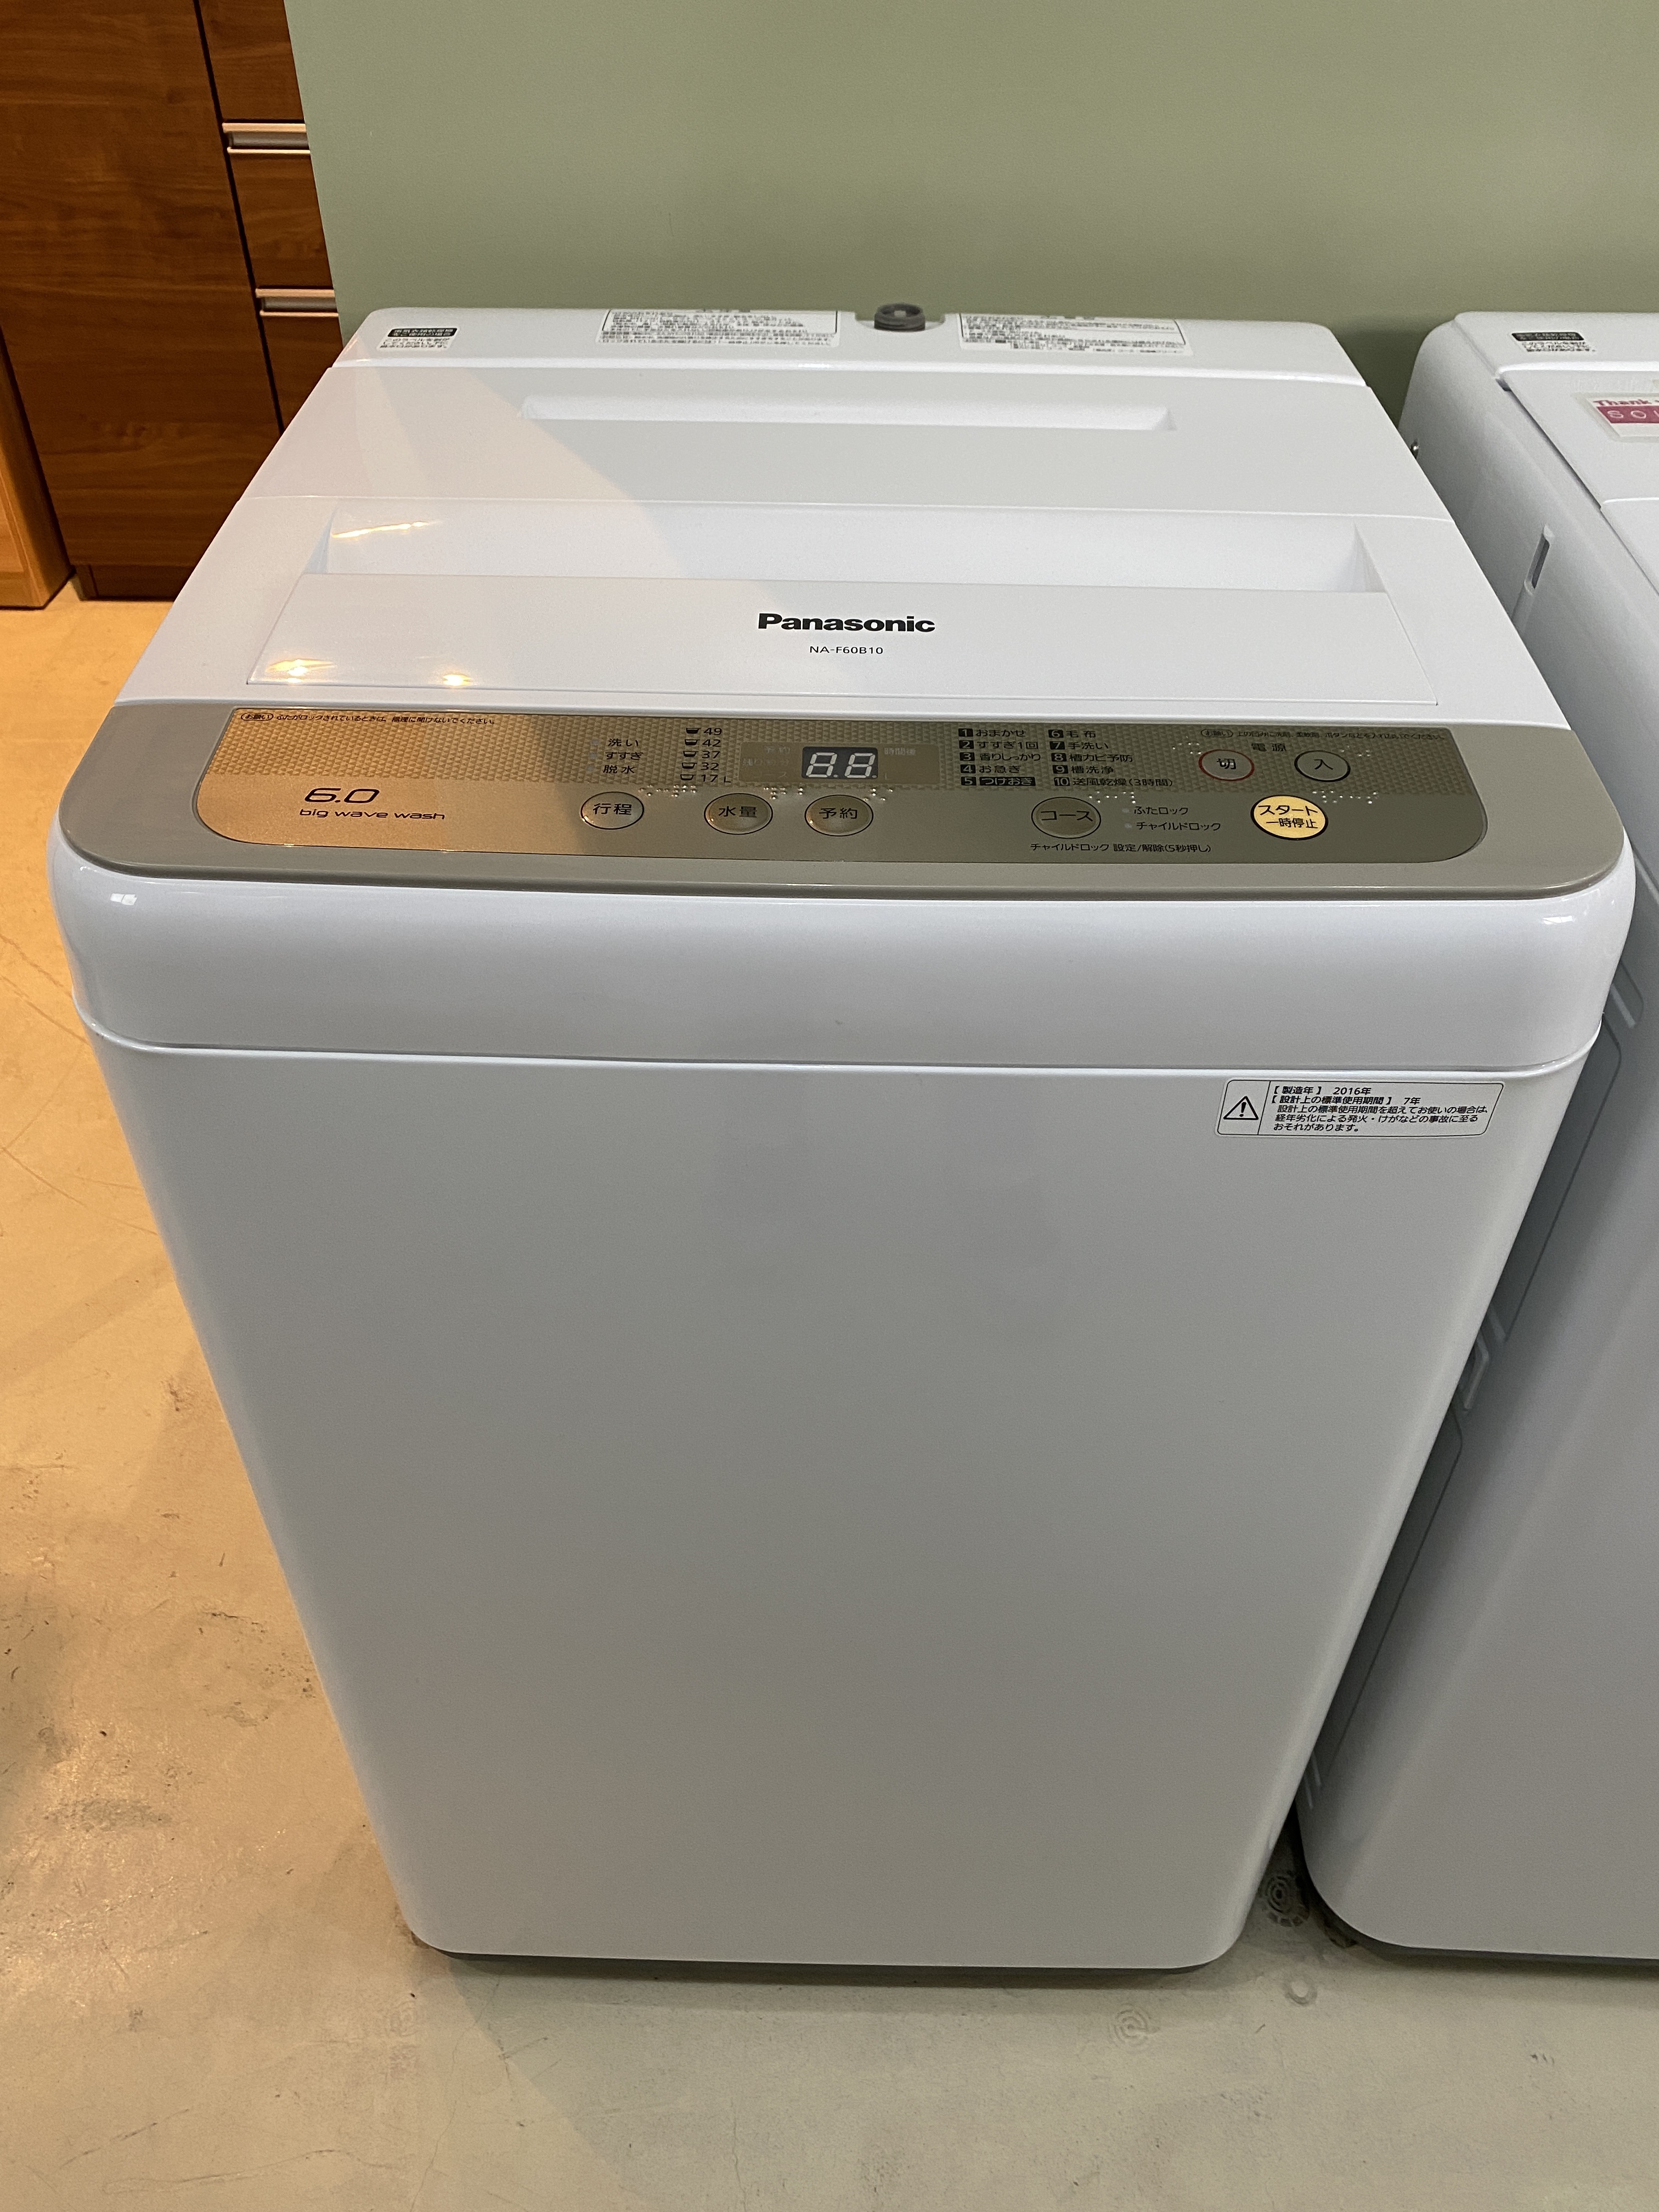 誠実 ♦️EJ2529番Panasonic全自動洗濯機 【2016年製】 - 洗濯機